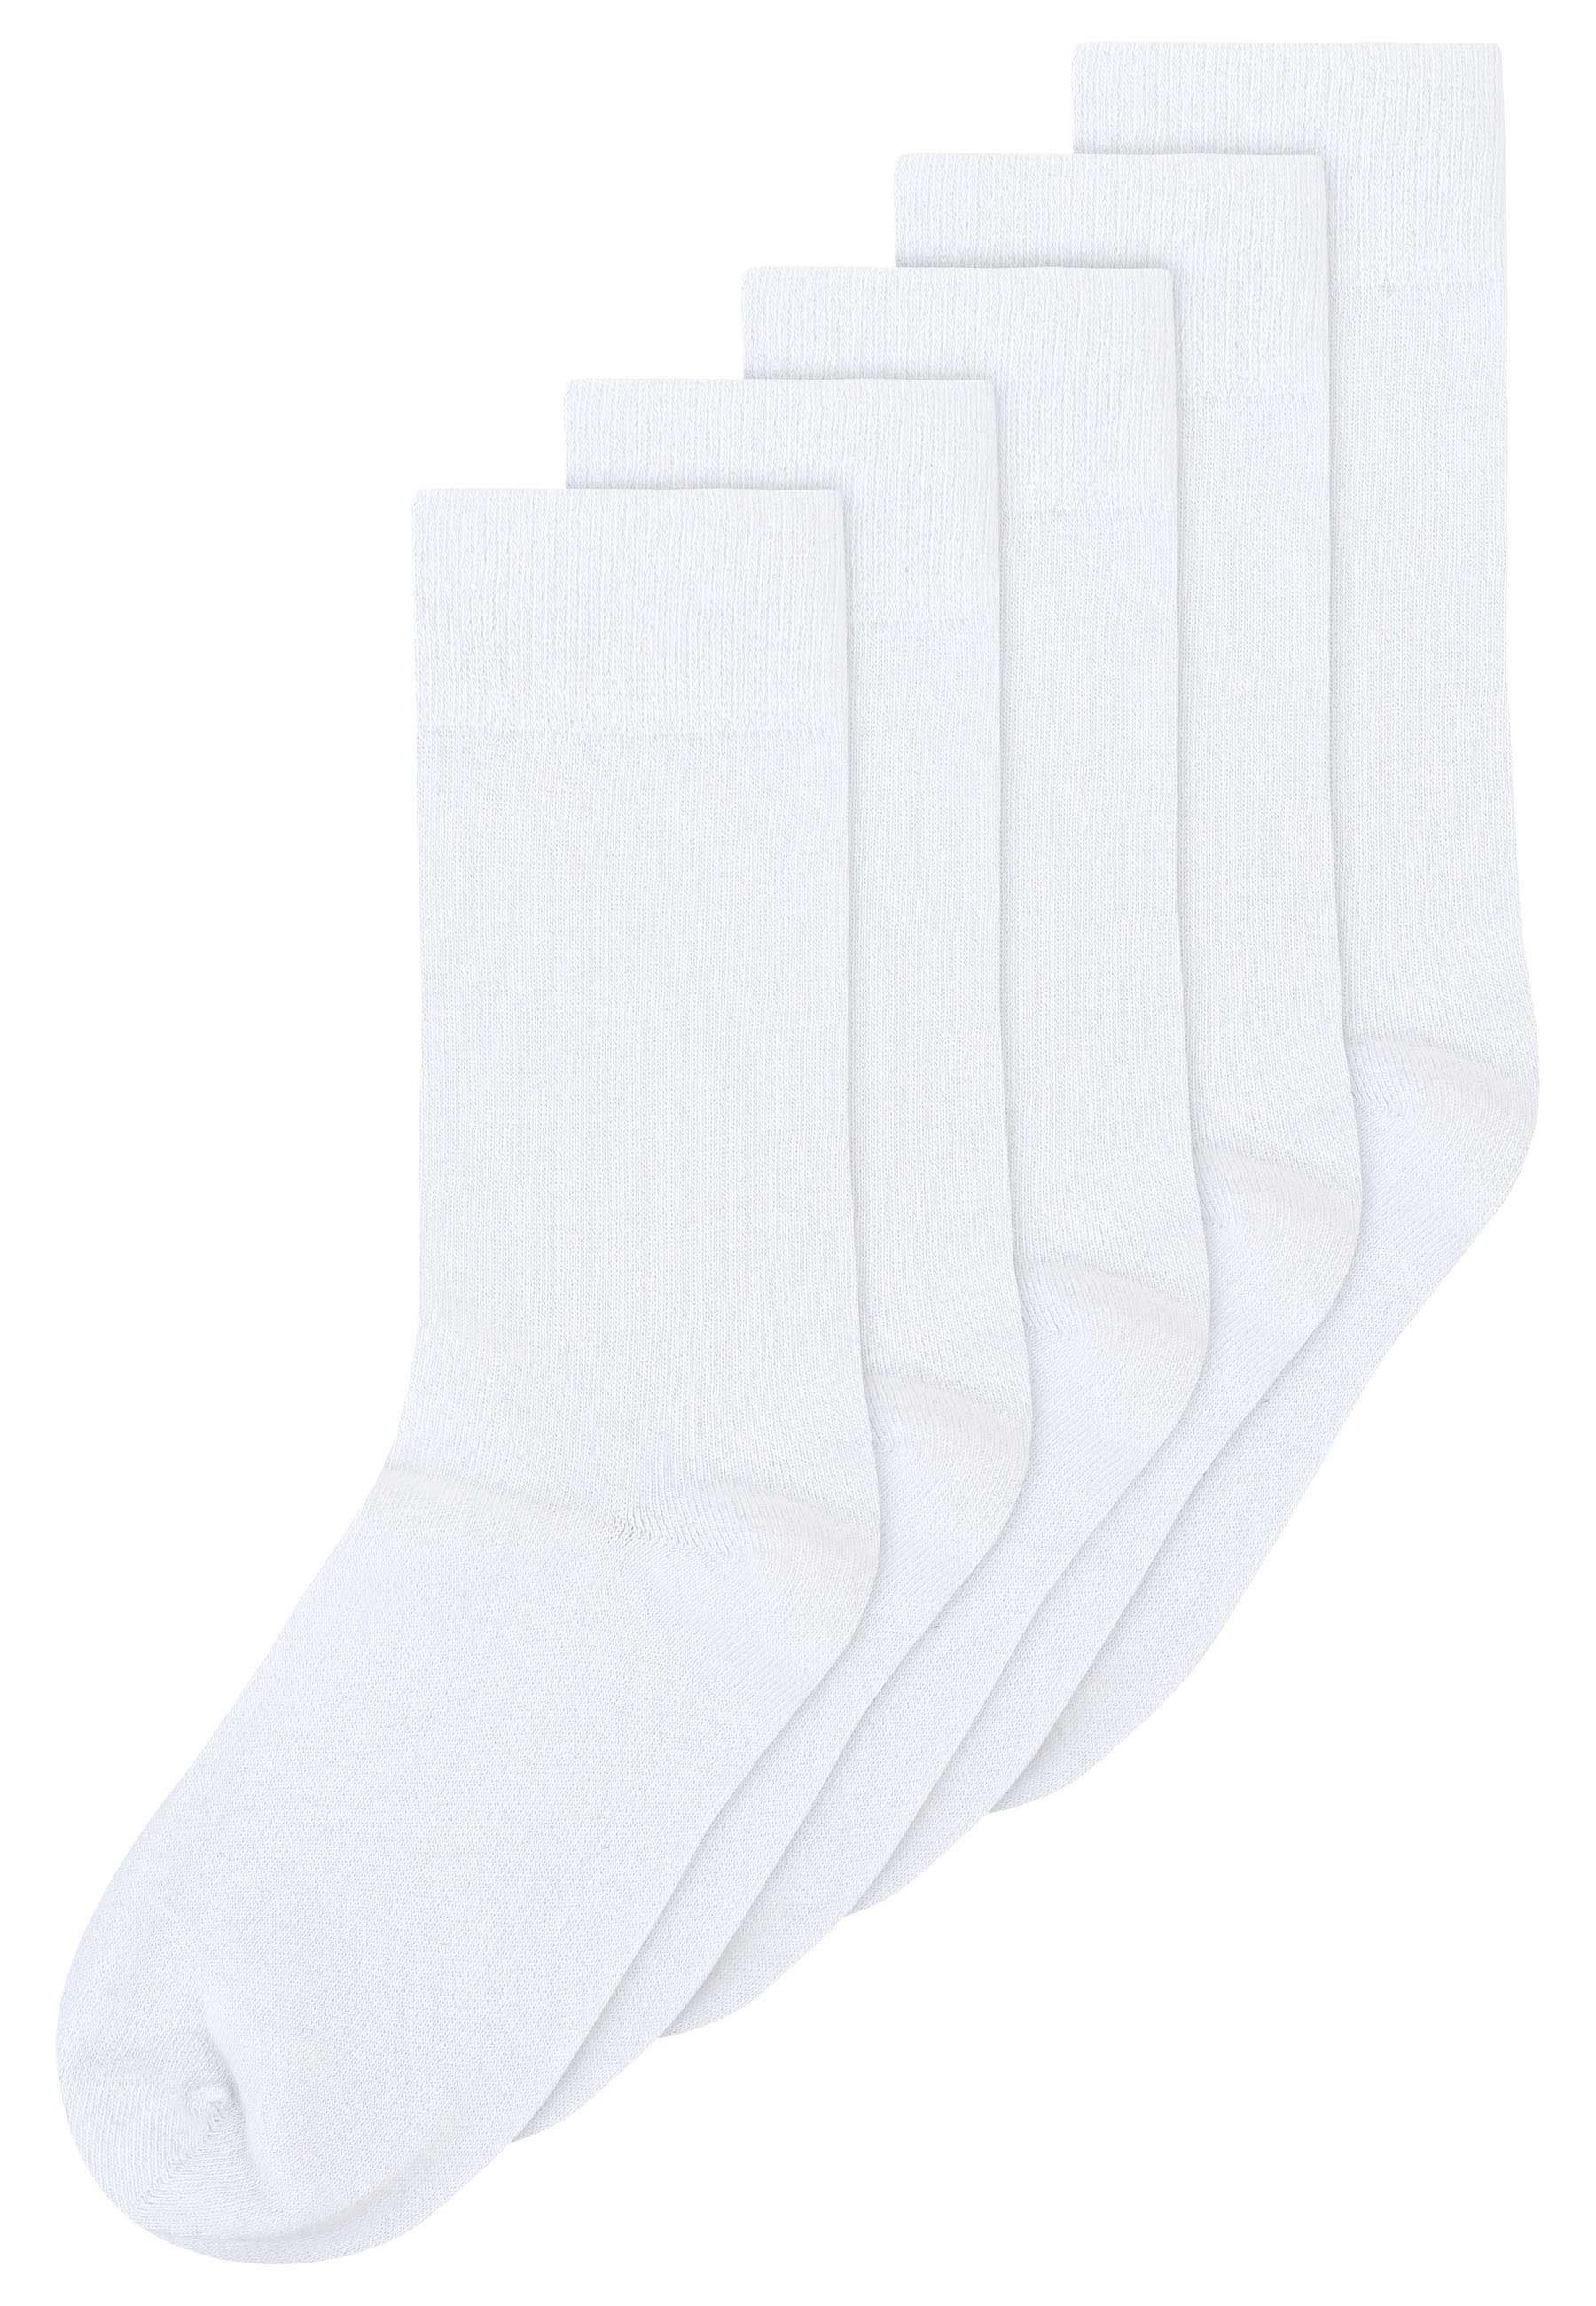 MELA Socken Socken 5er Pack Basic Das Elasthan "Roica" ist abbaubar, ohne Schadstoffe zu hinterlassen